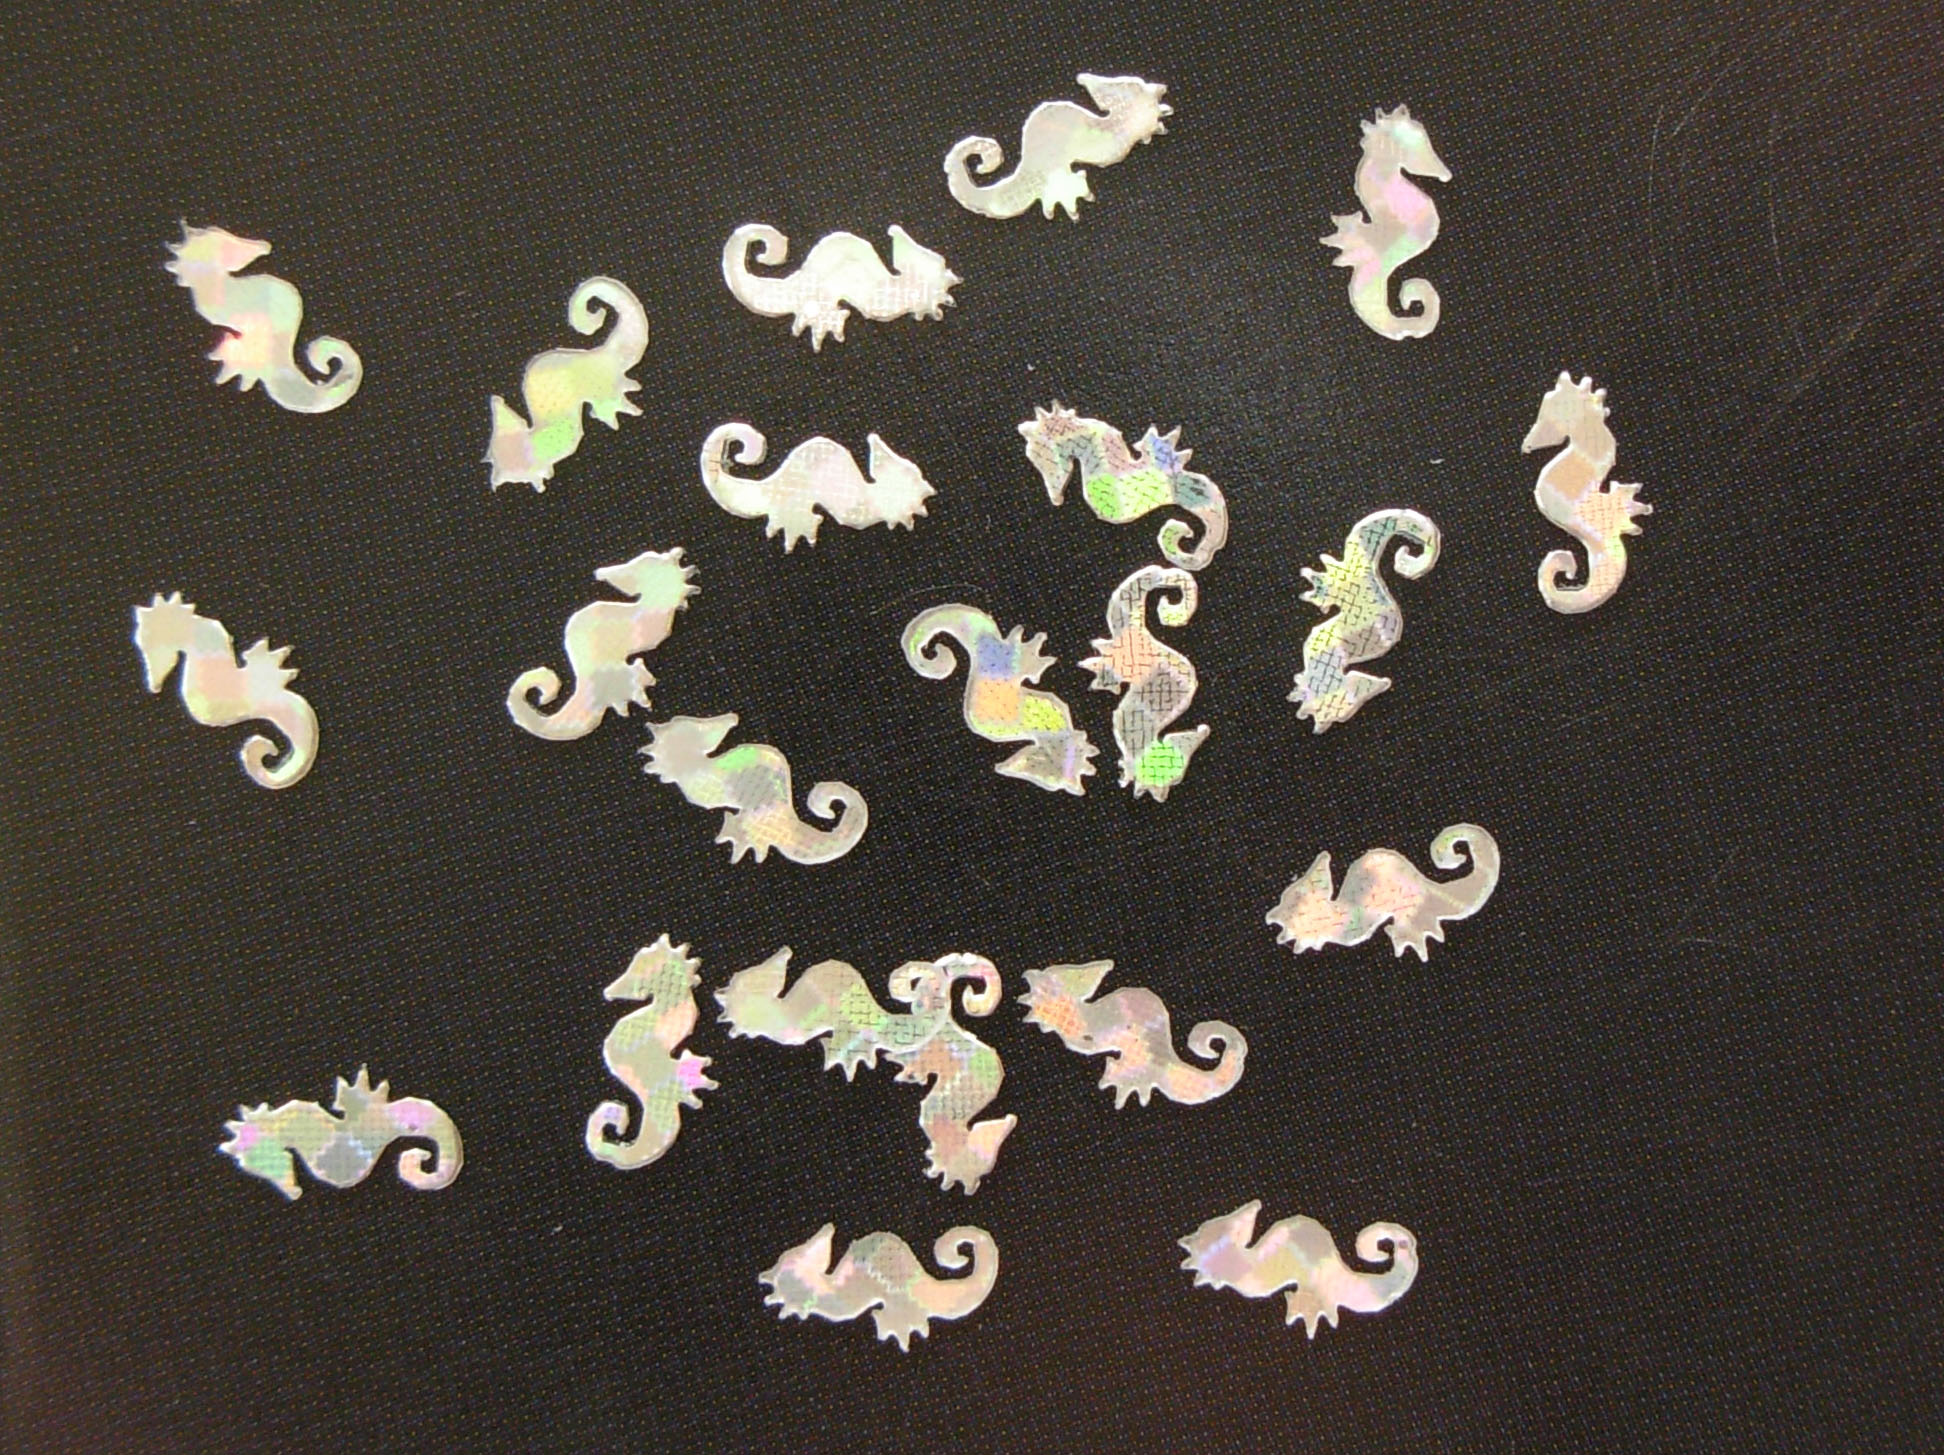 1106: Silver Hologram Sea Horses Micro Confetti